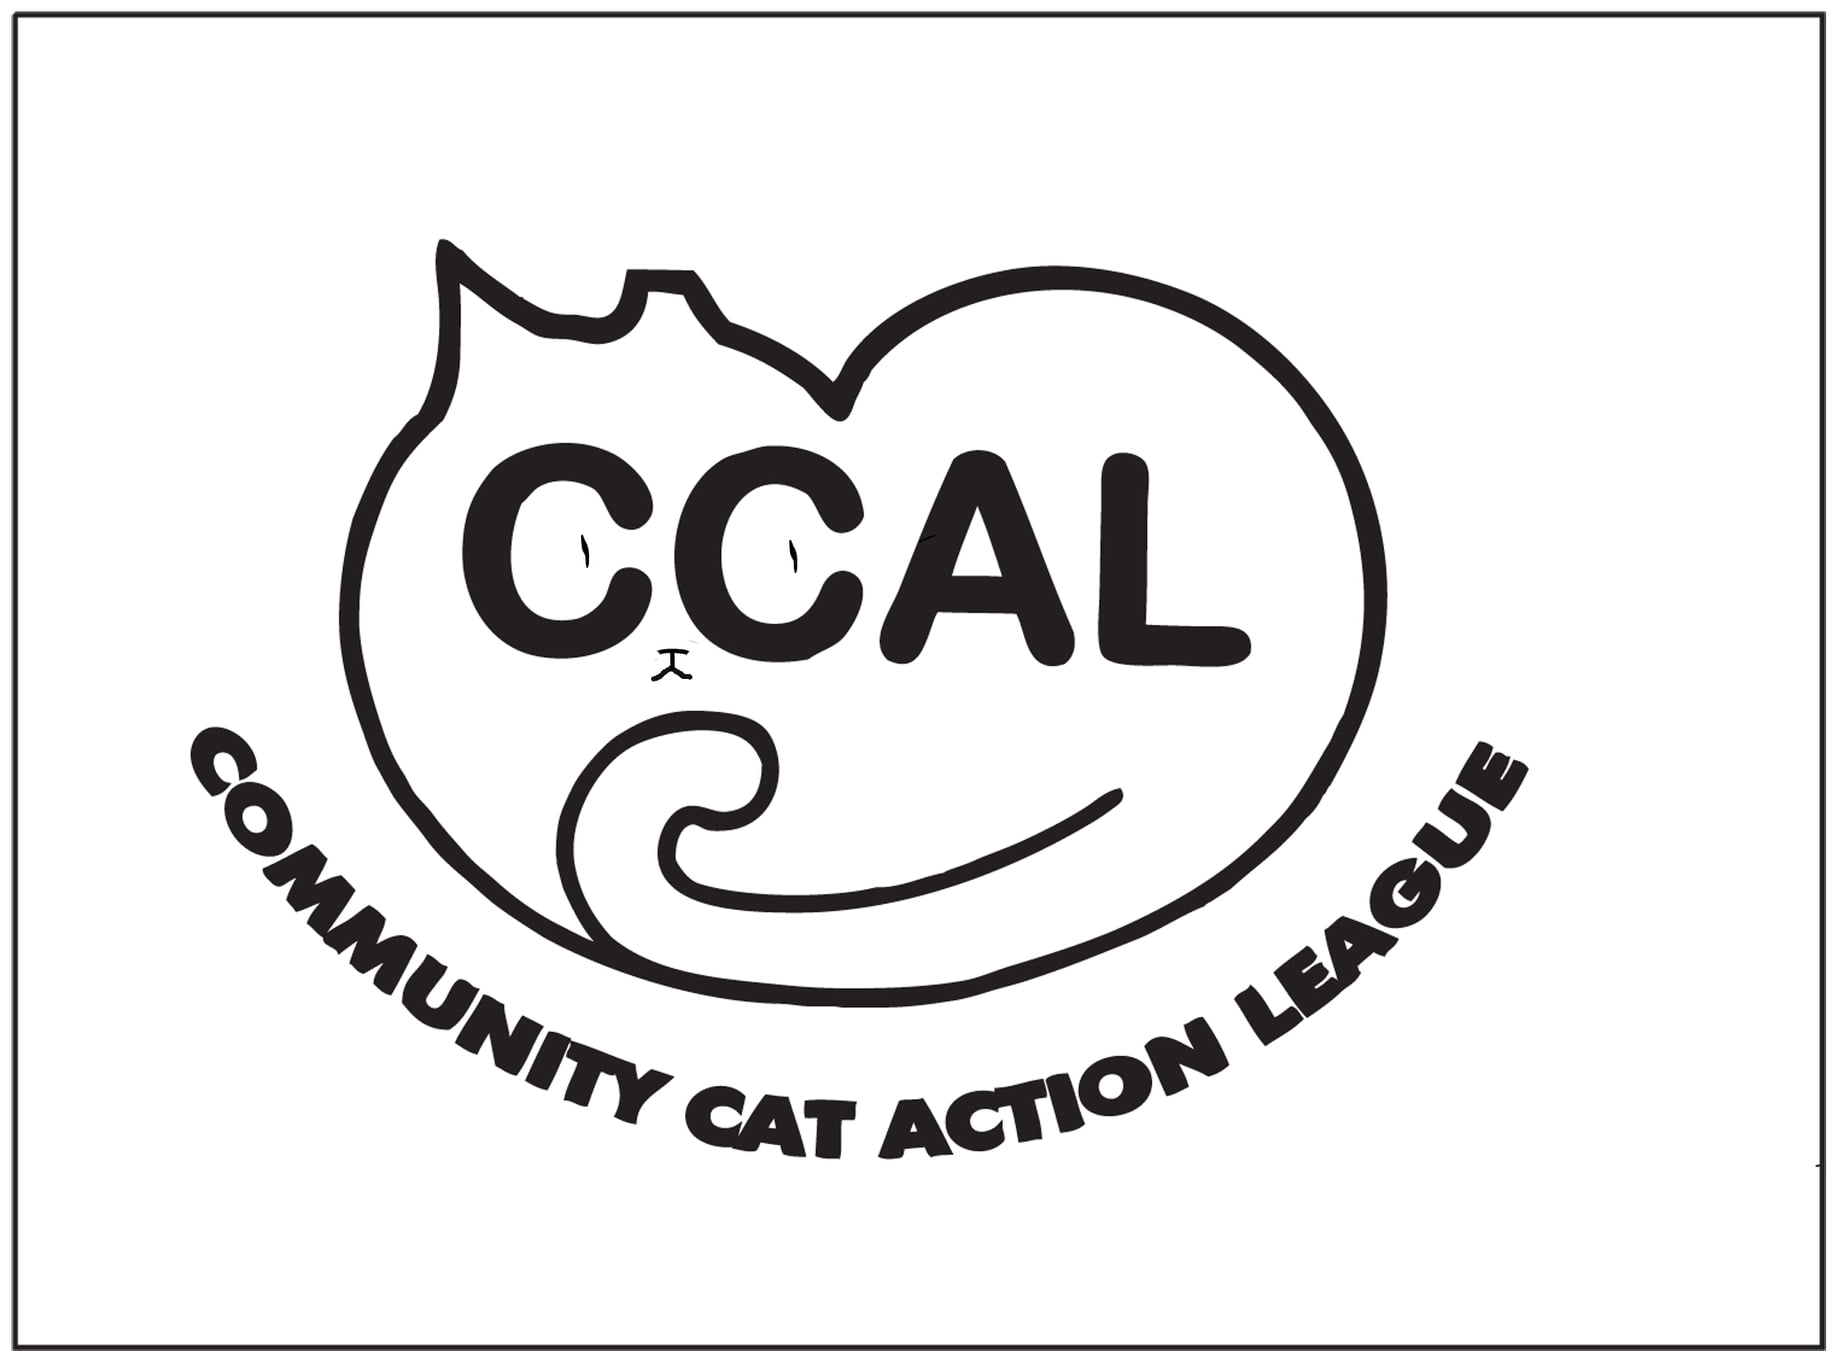 Community Cat Action League